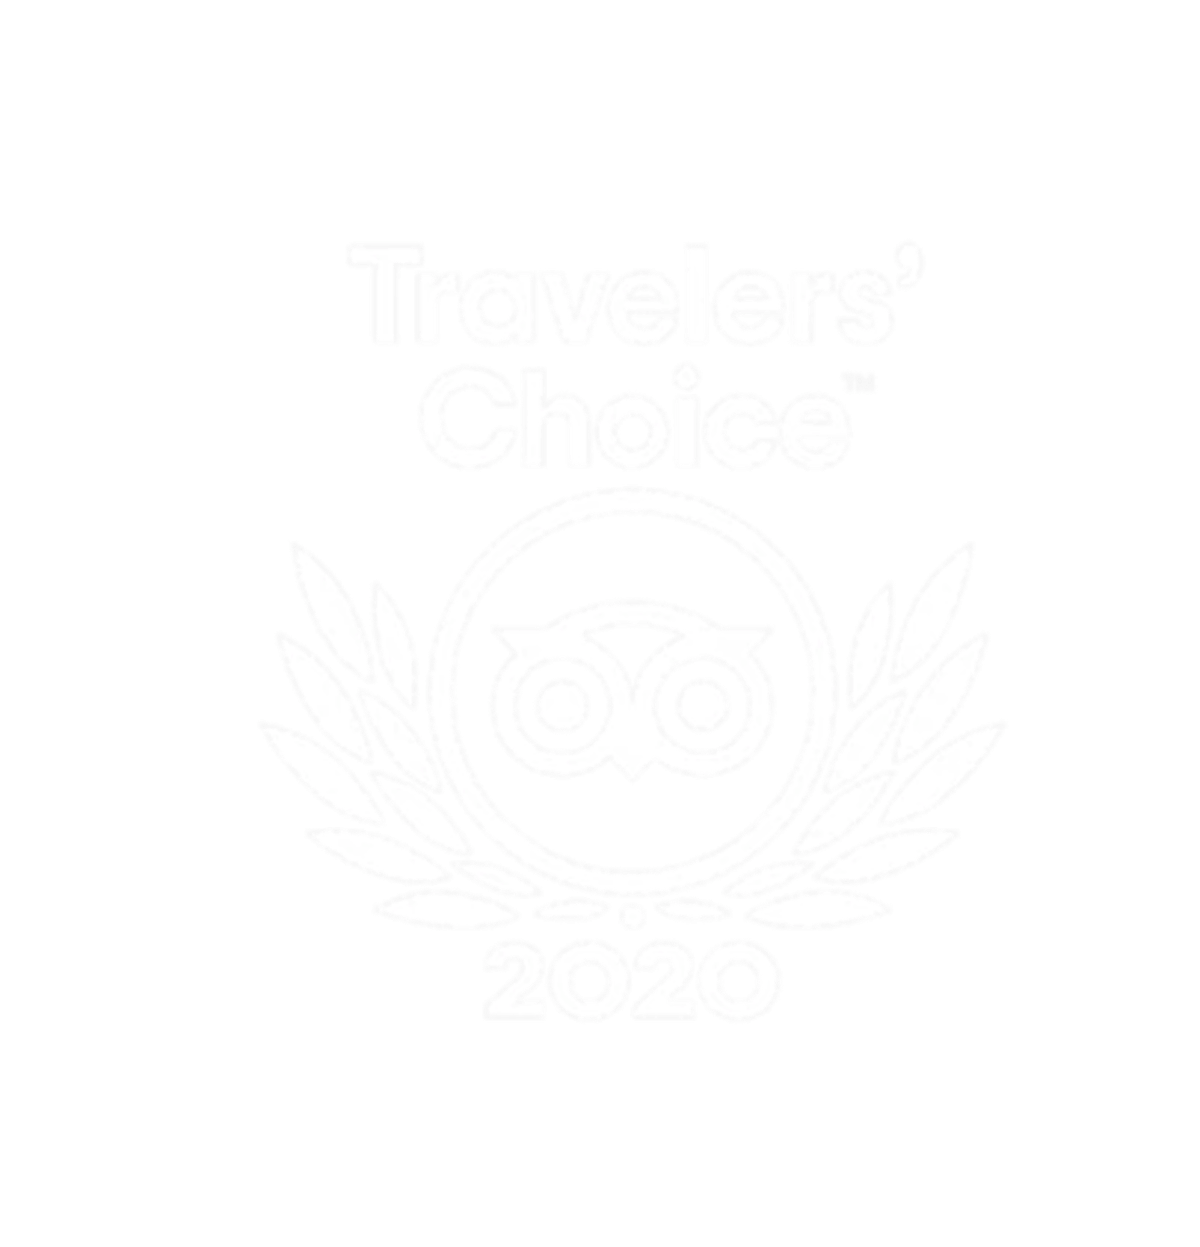 Tripadvisor Travelers' Choice Award - 2020